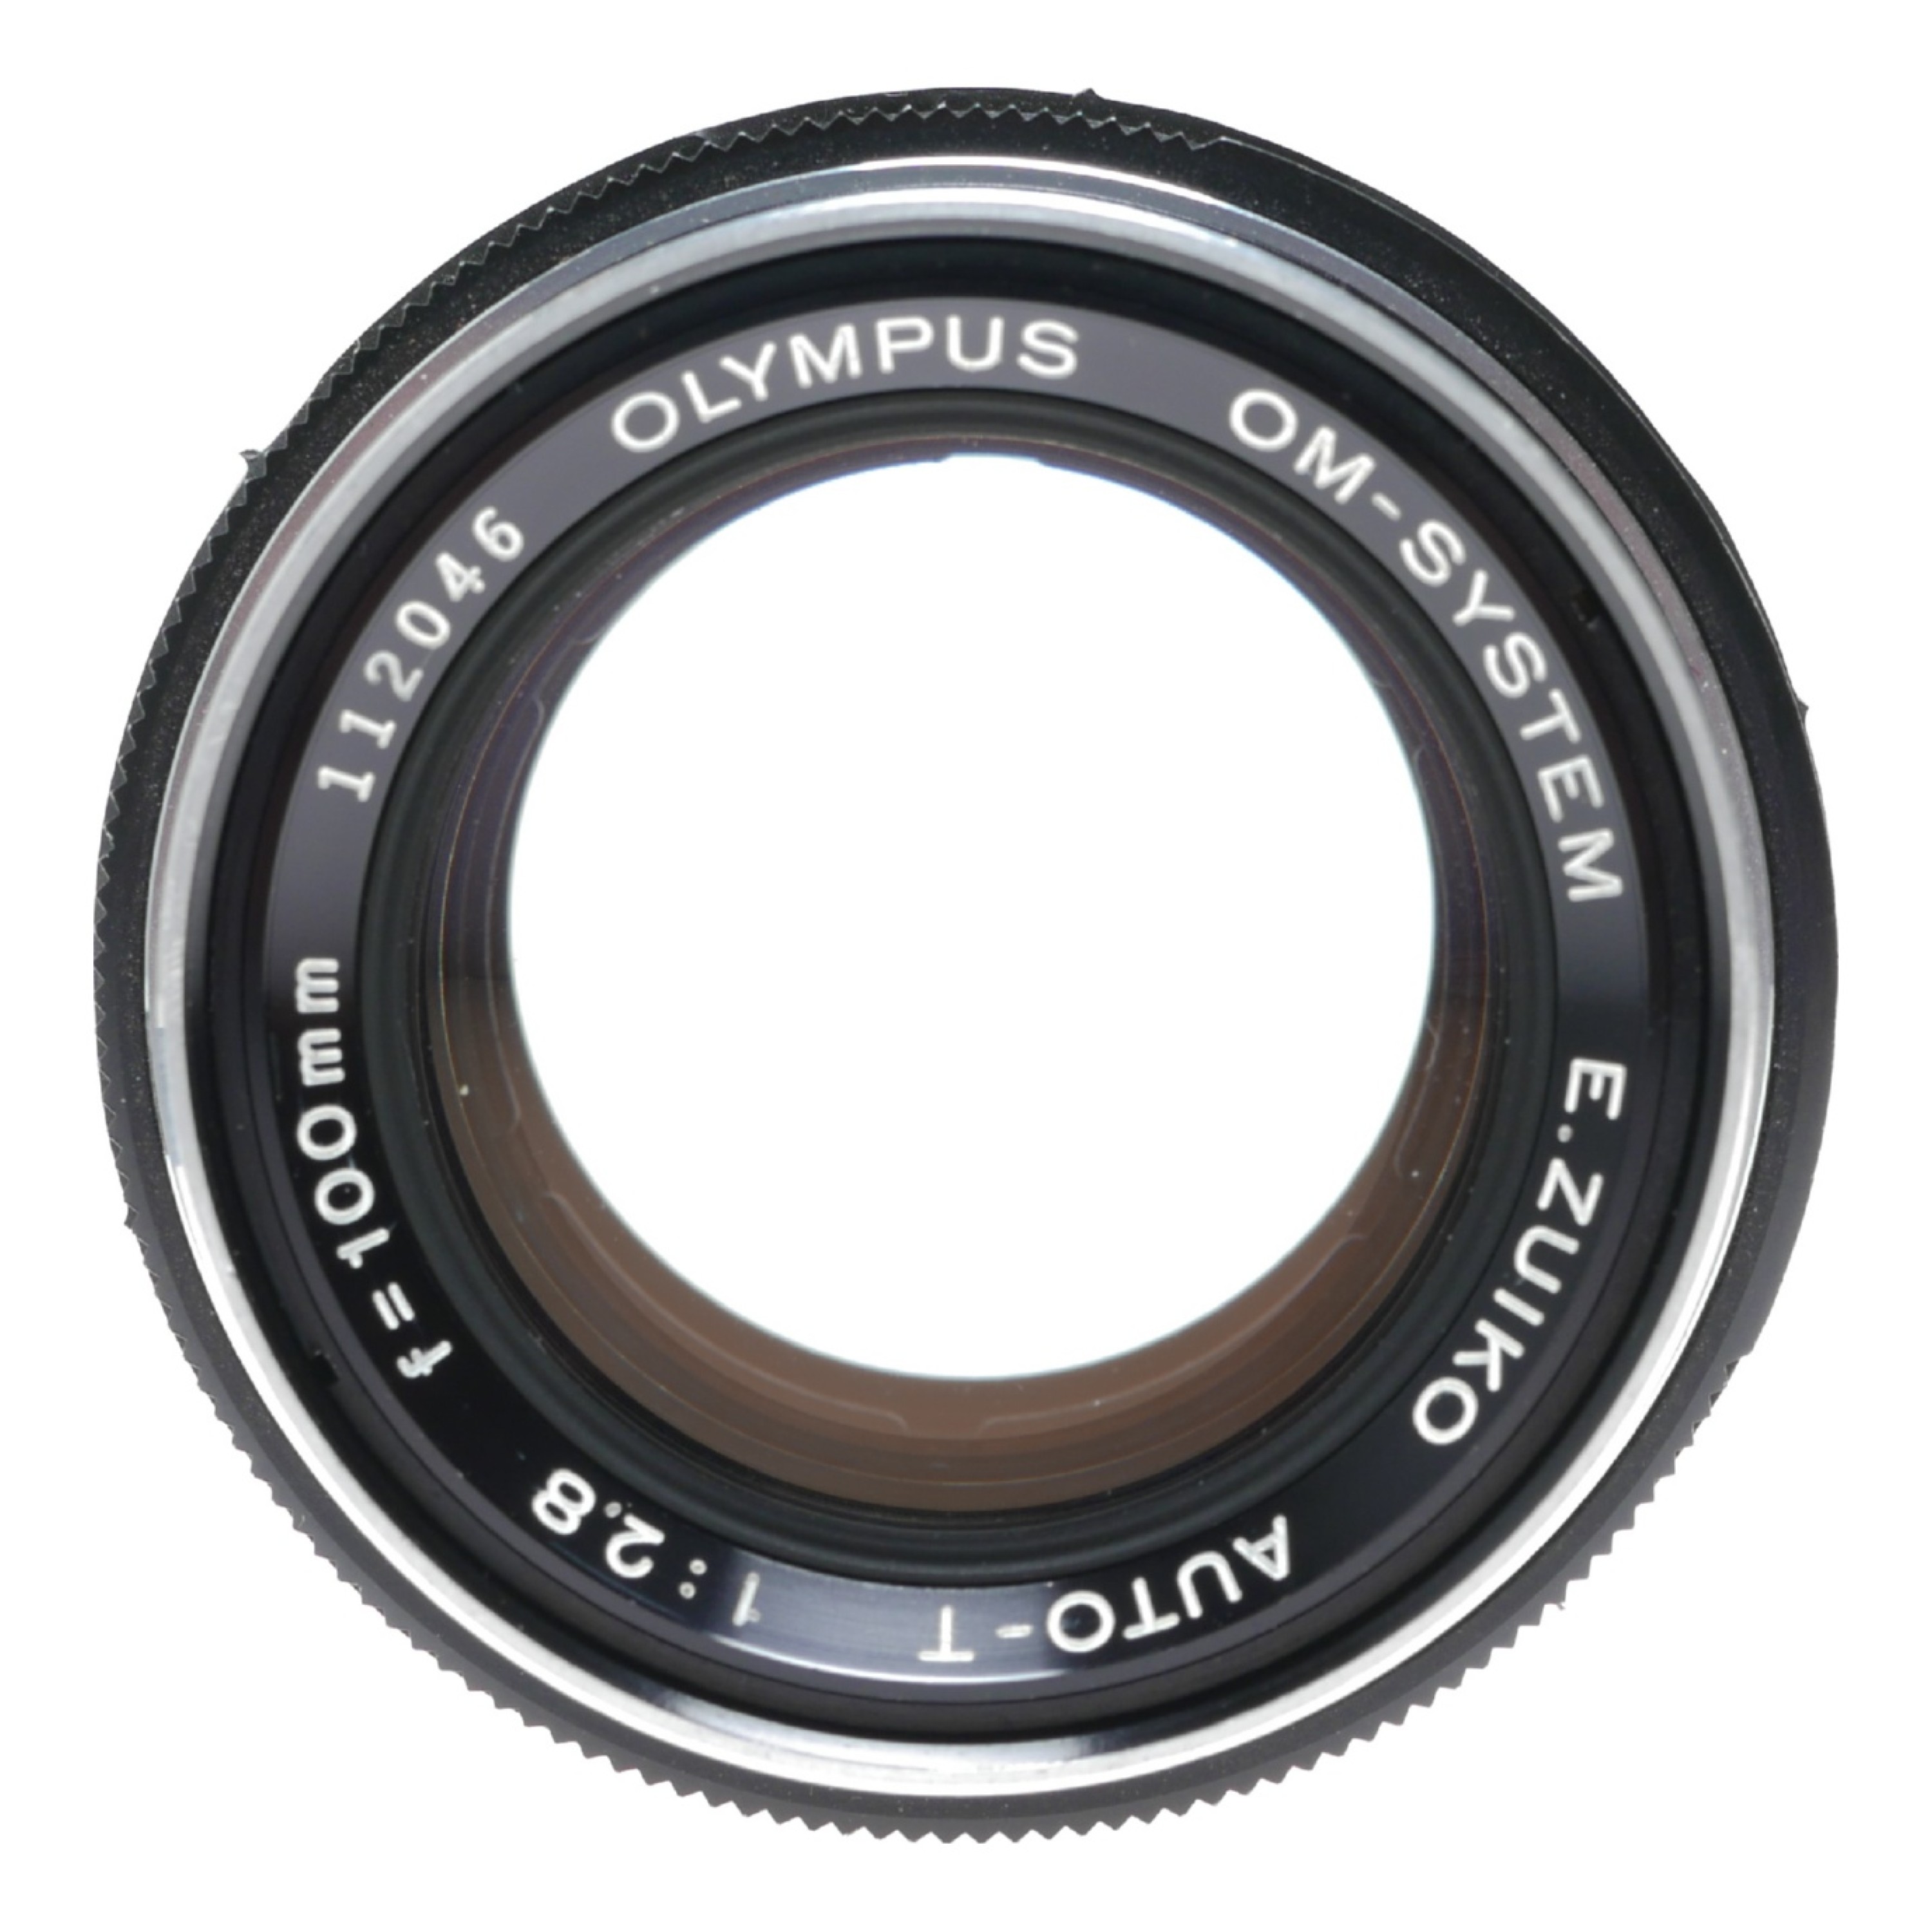 Olympus OM-Zuiko Auto-T 1:2.8 f=100mm lens 2.8/100 f/2.8 SLR